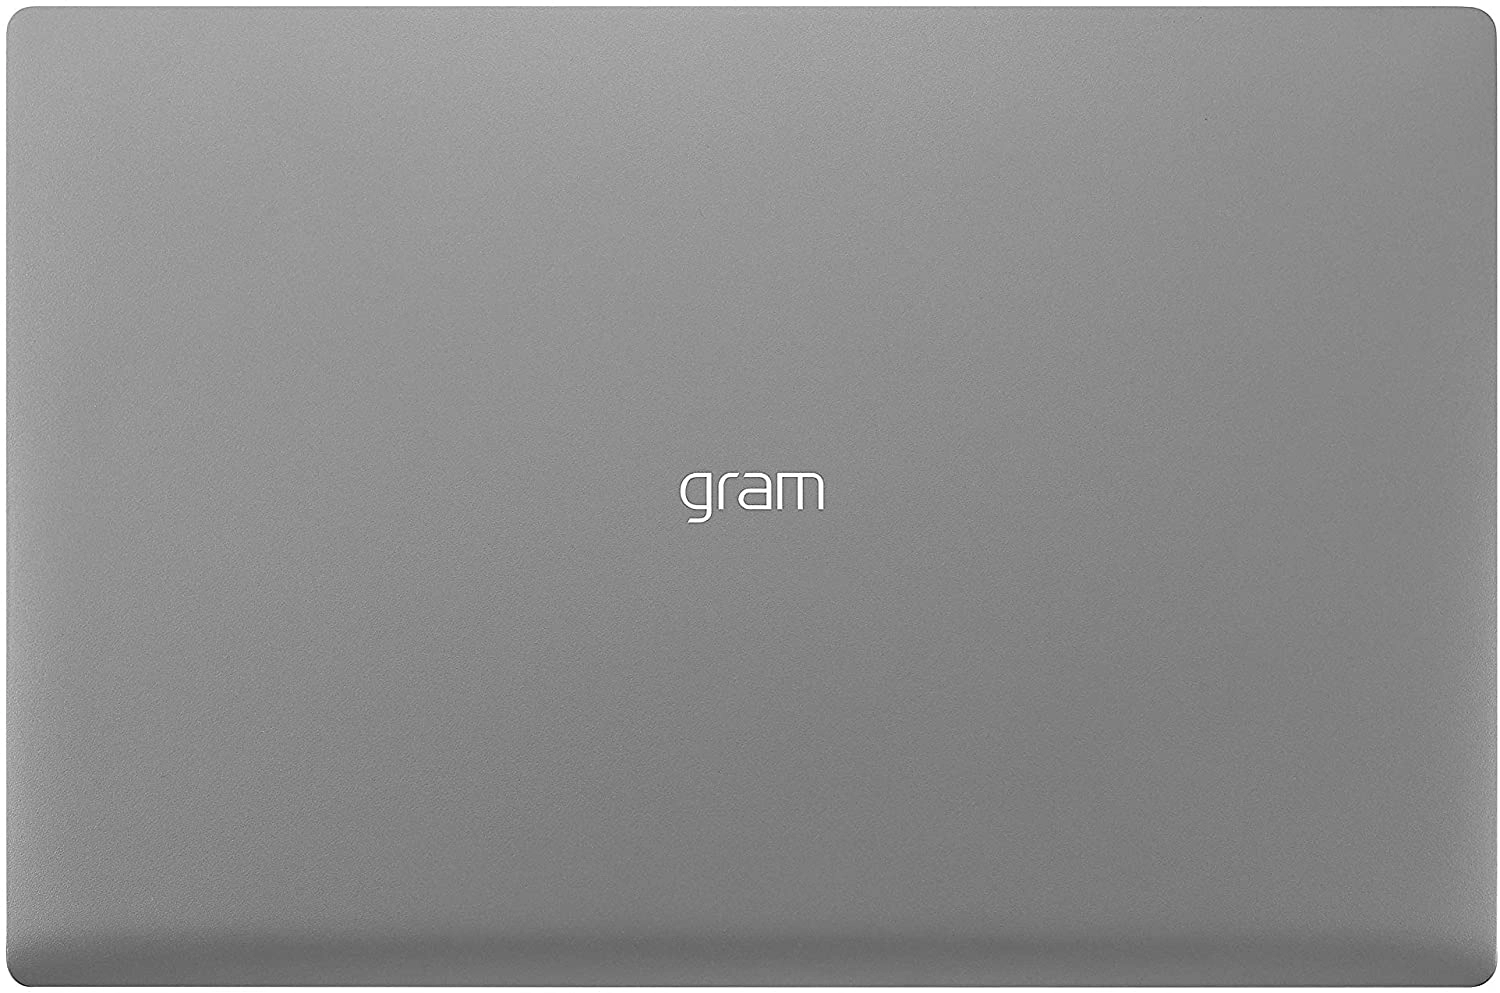 LG gram laptop image